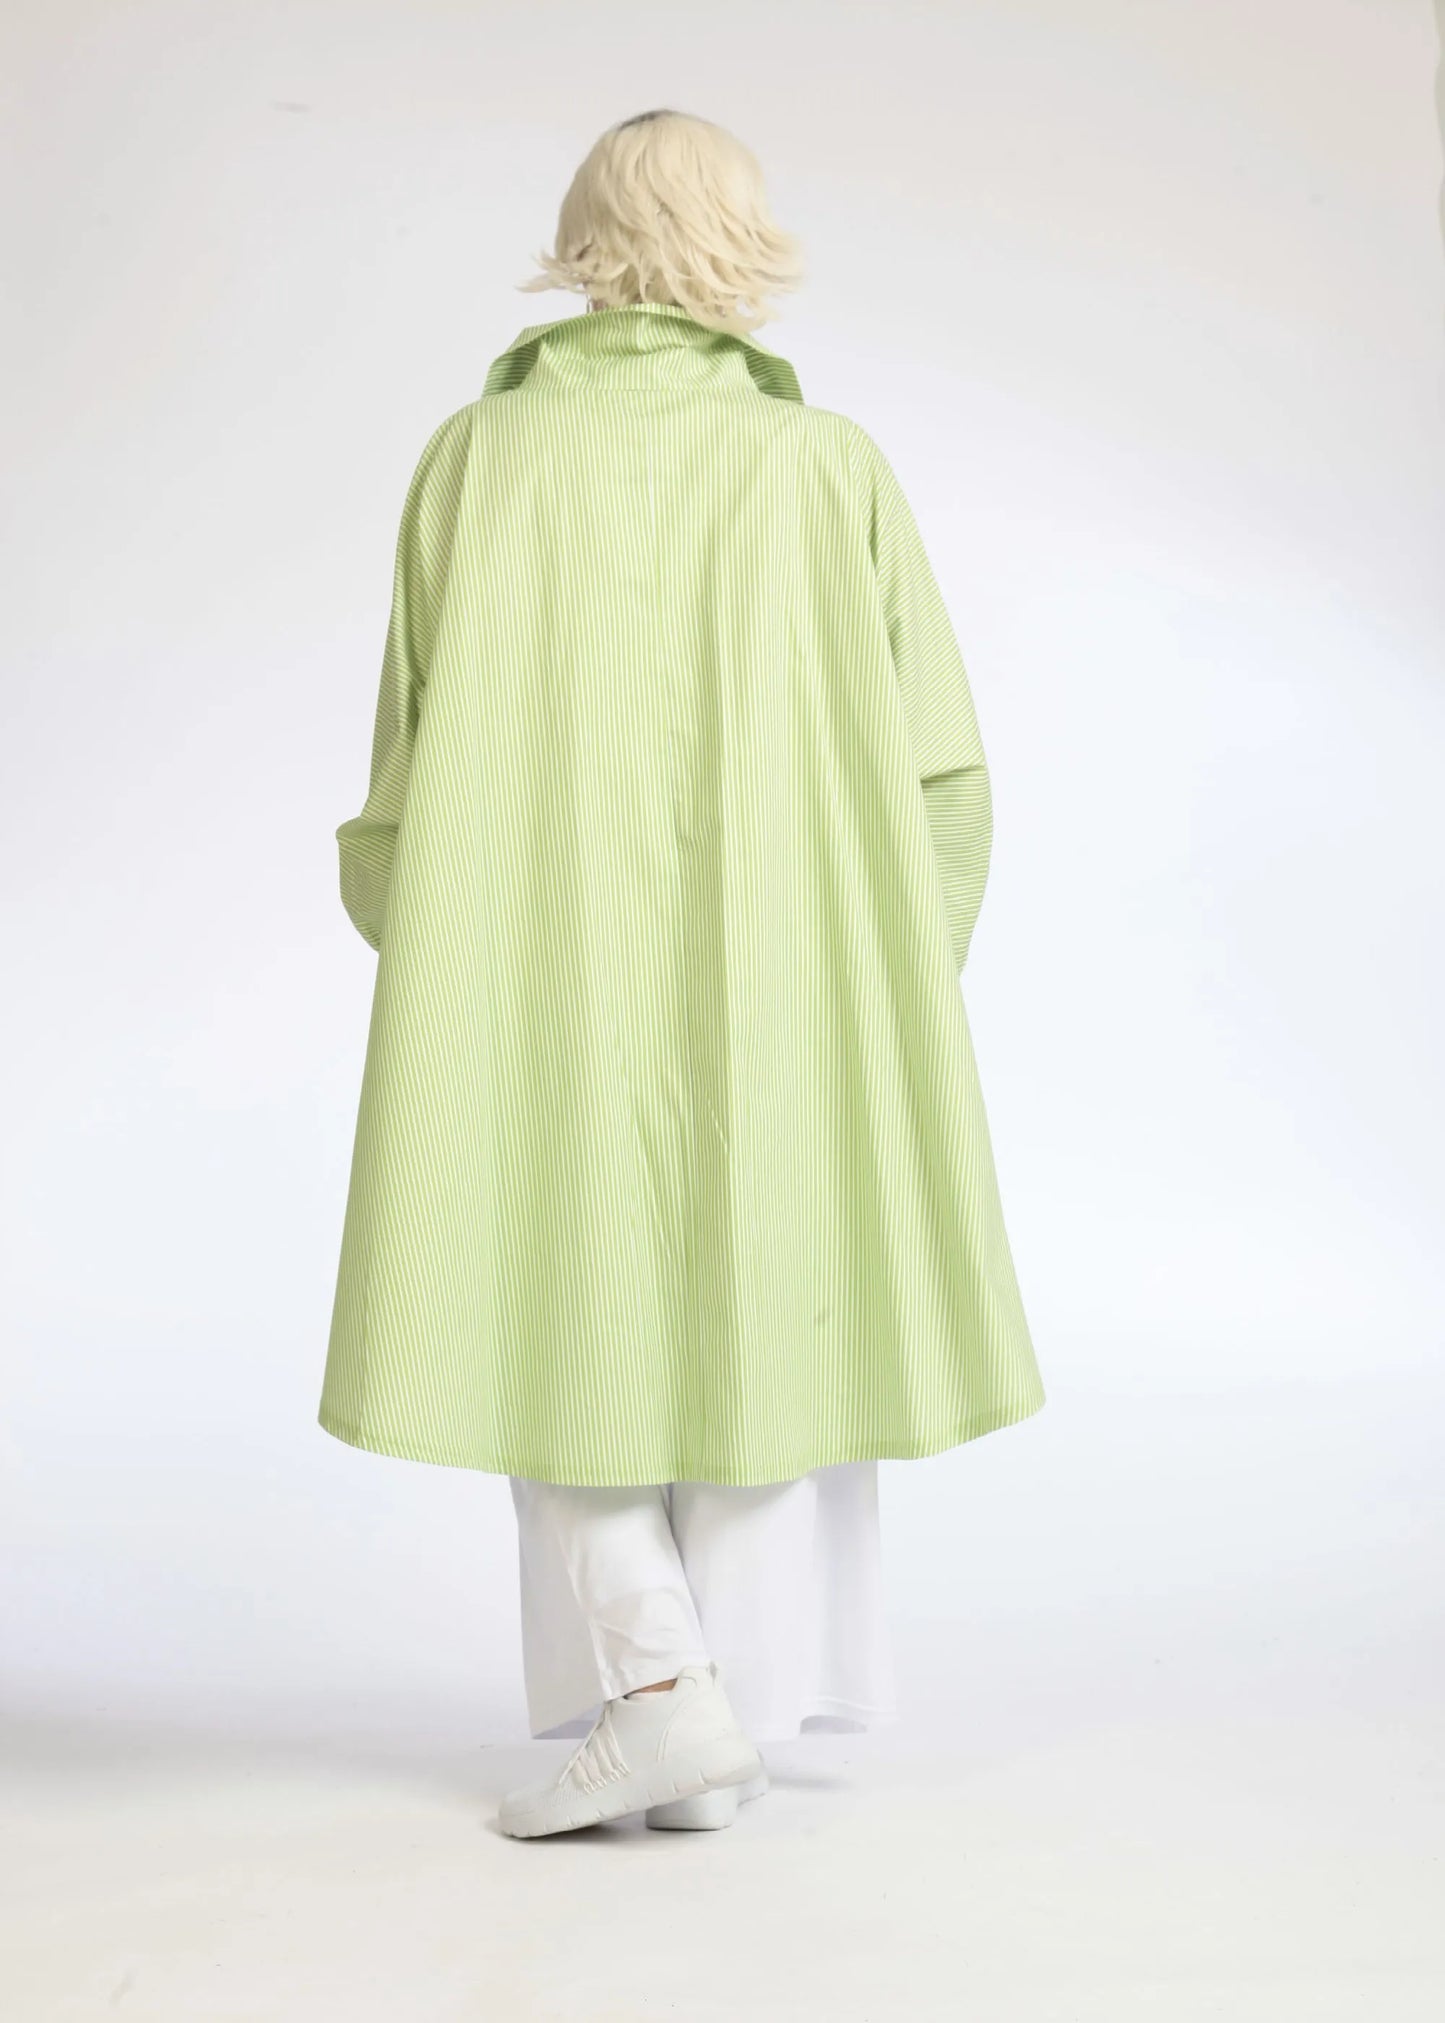 Sommer Bluse in Vokuhila Form aus glatter Popeline Qualität, Verena in Apfelgrün-Weiß